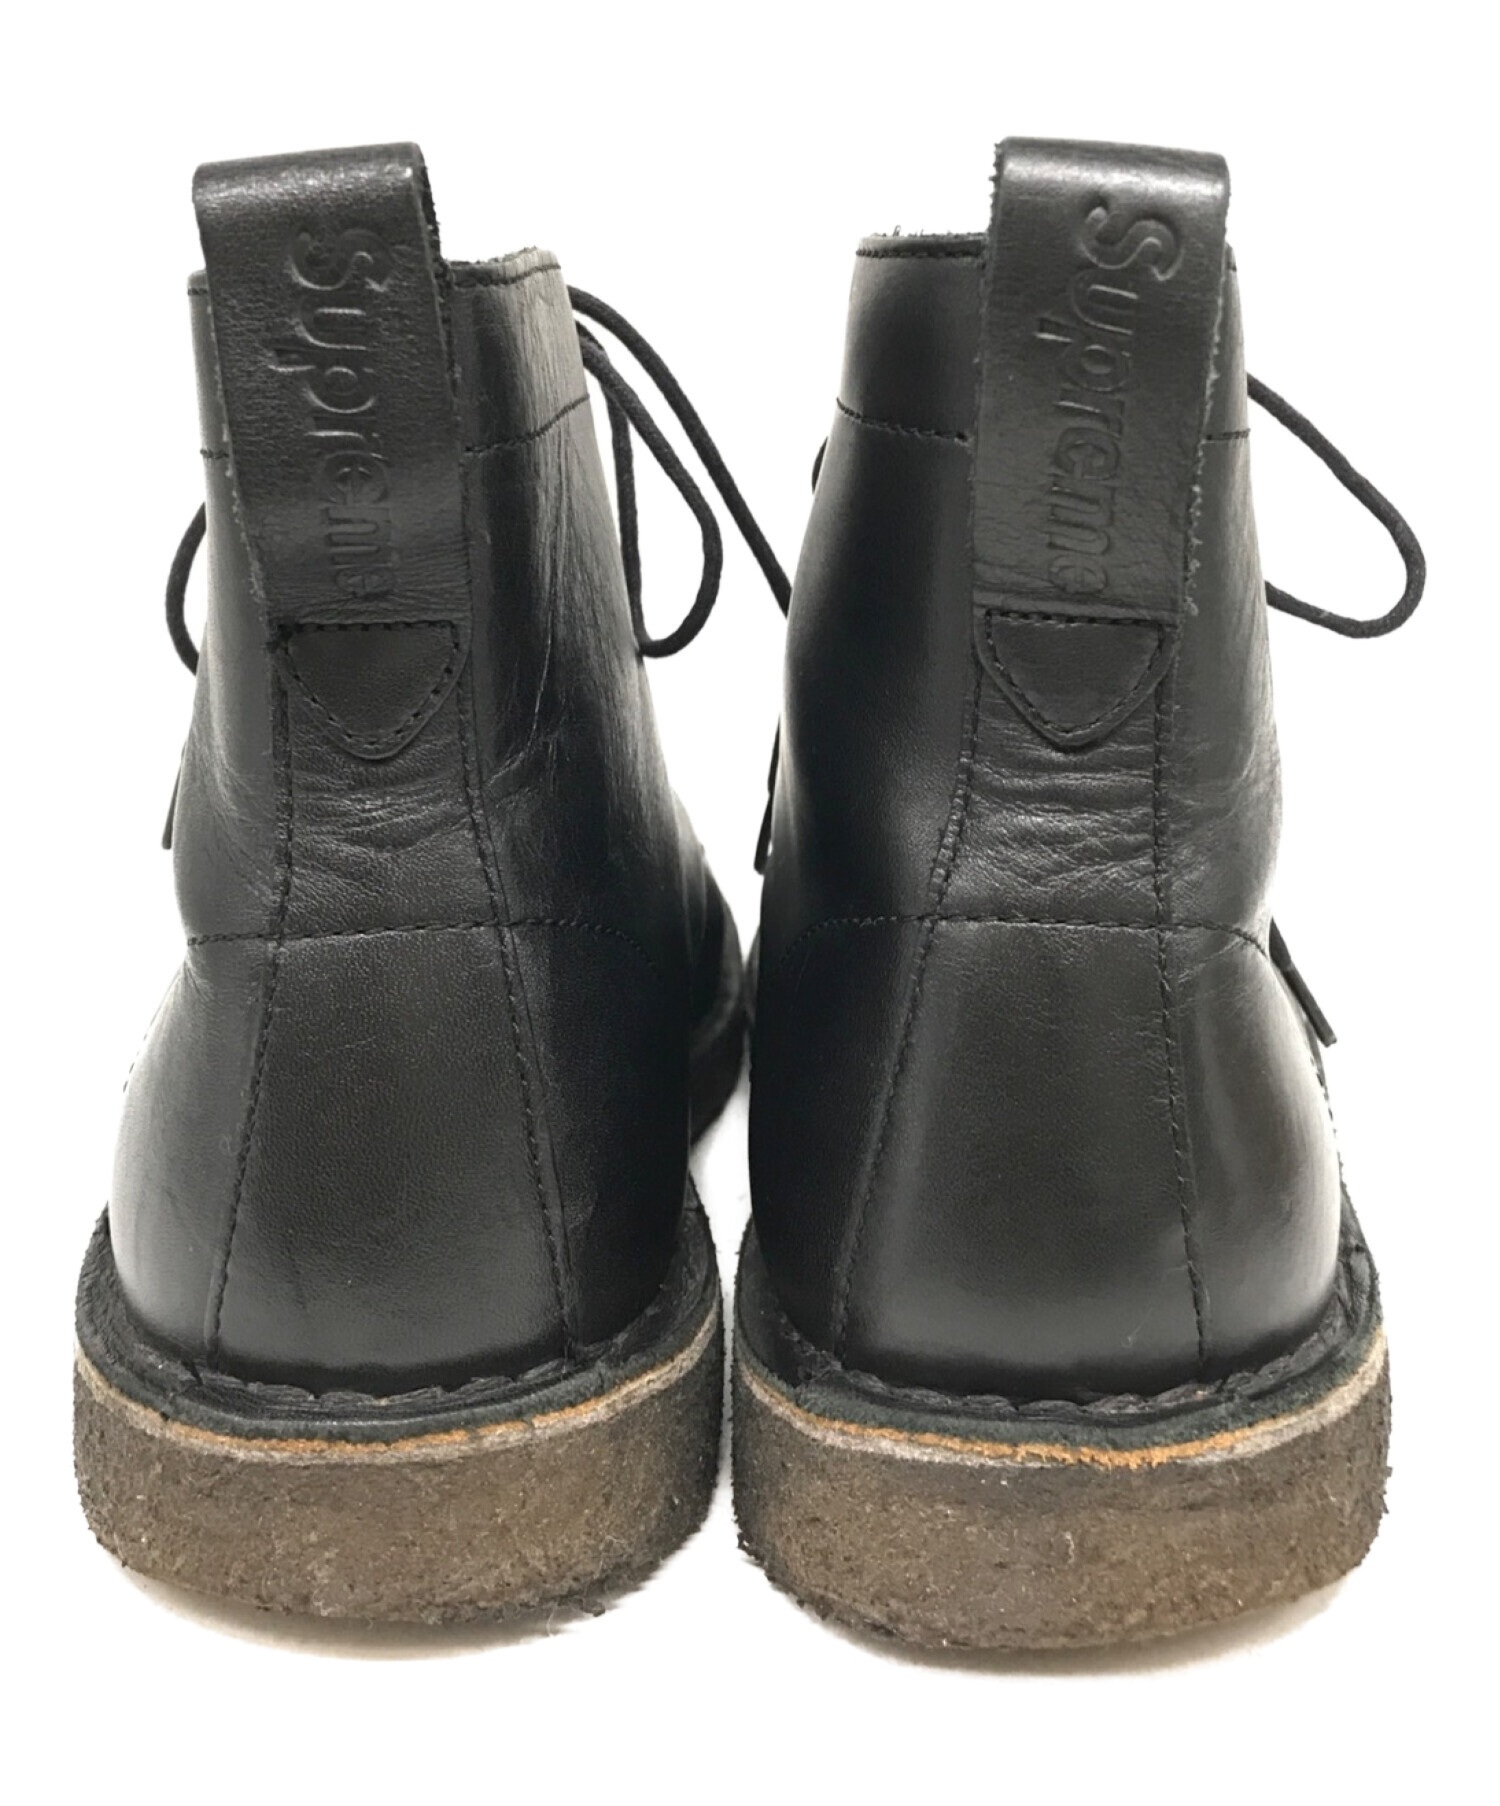 Supreme (シュプリーム) CLARKS (クラークス) Clarks Mali Boots ブラック サイズ:9